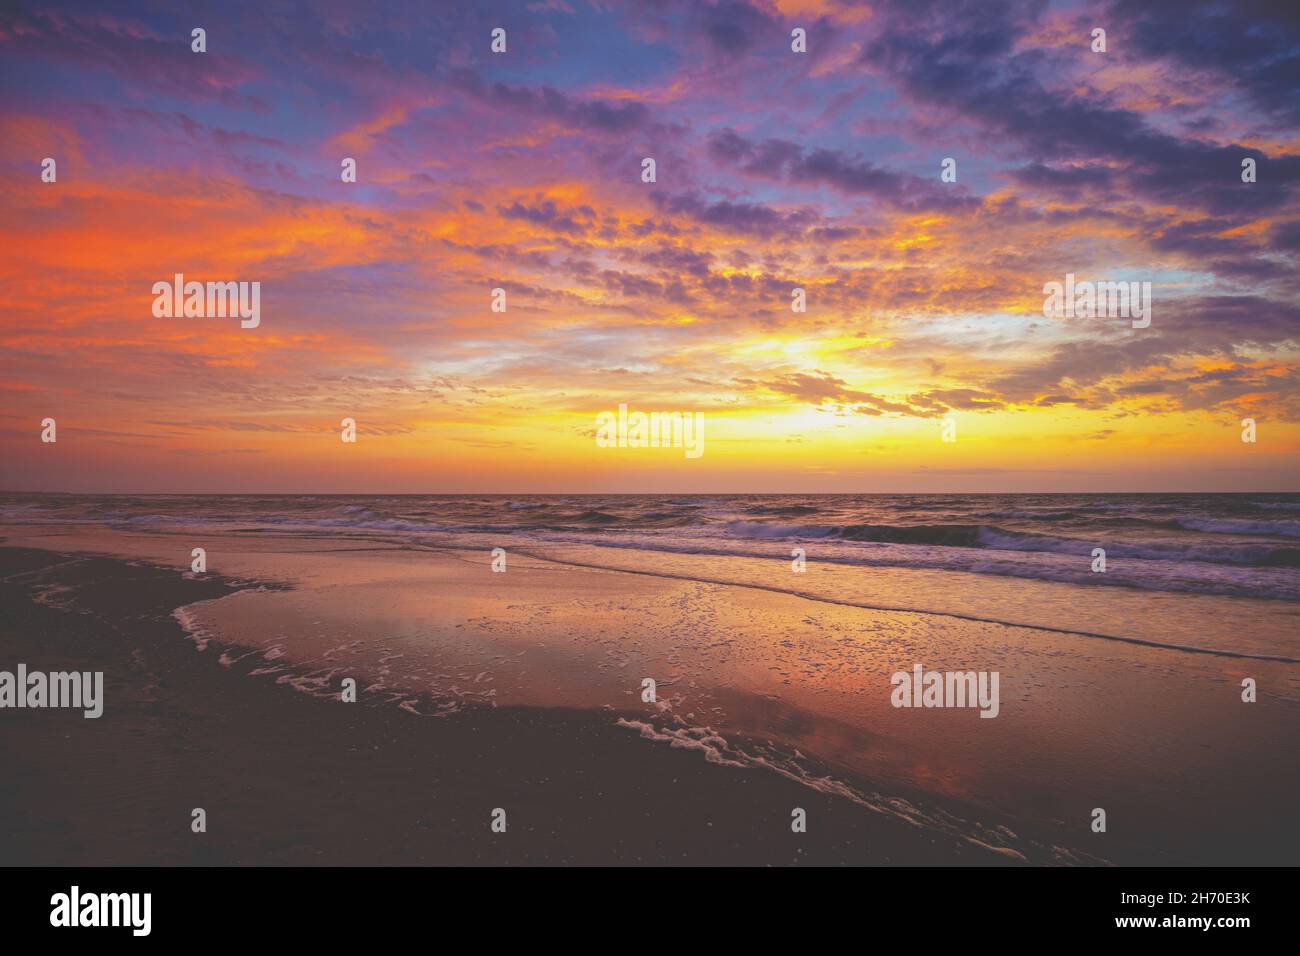 Stagcape al mattino presto. Alba sul mare. Spiaggia di sabbia con il bel cielo drammatico durante l'alba. Paesaggio naturale Foto Stock